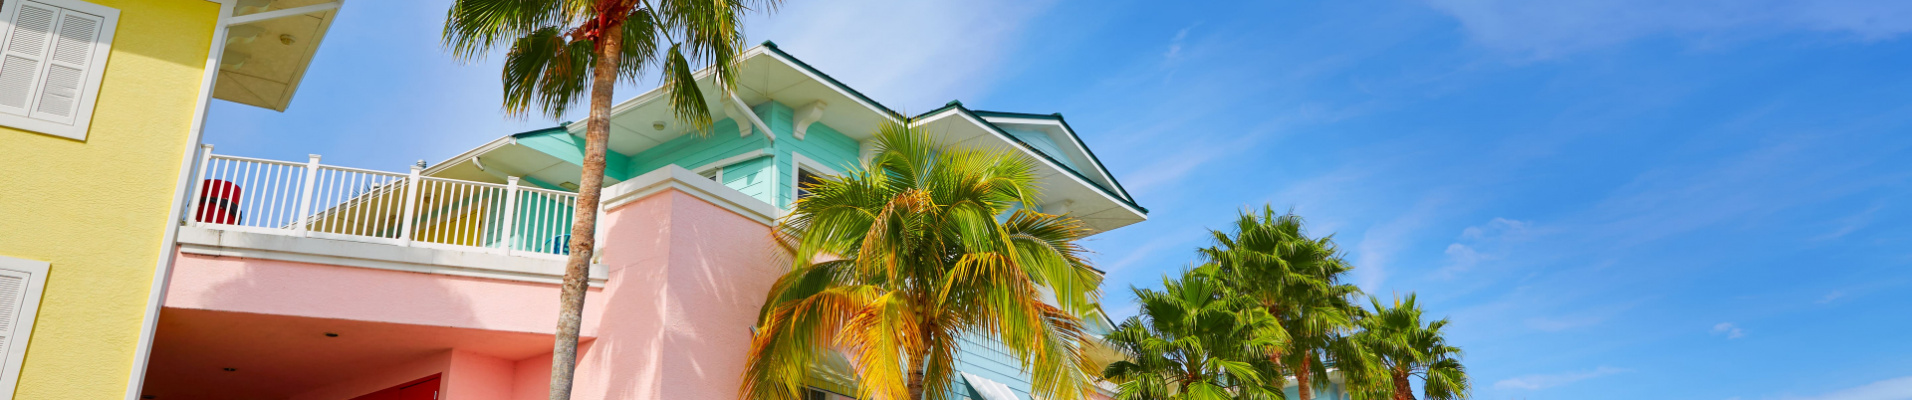 Maisons colorées Floride